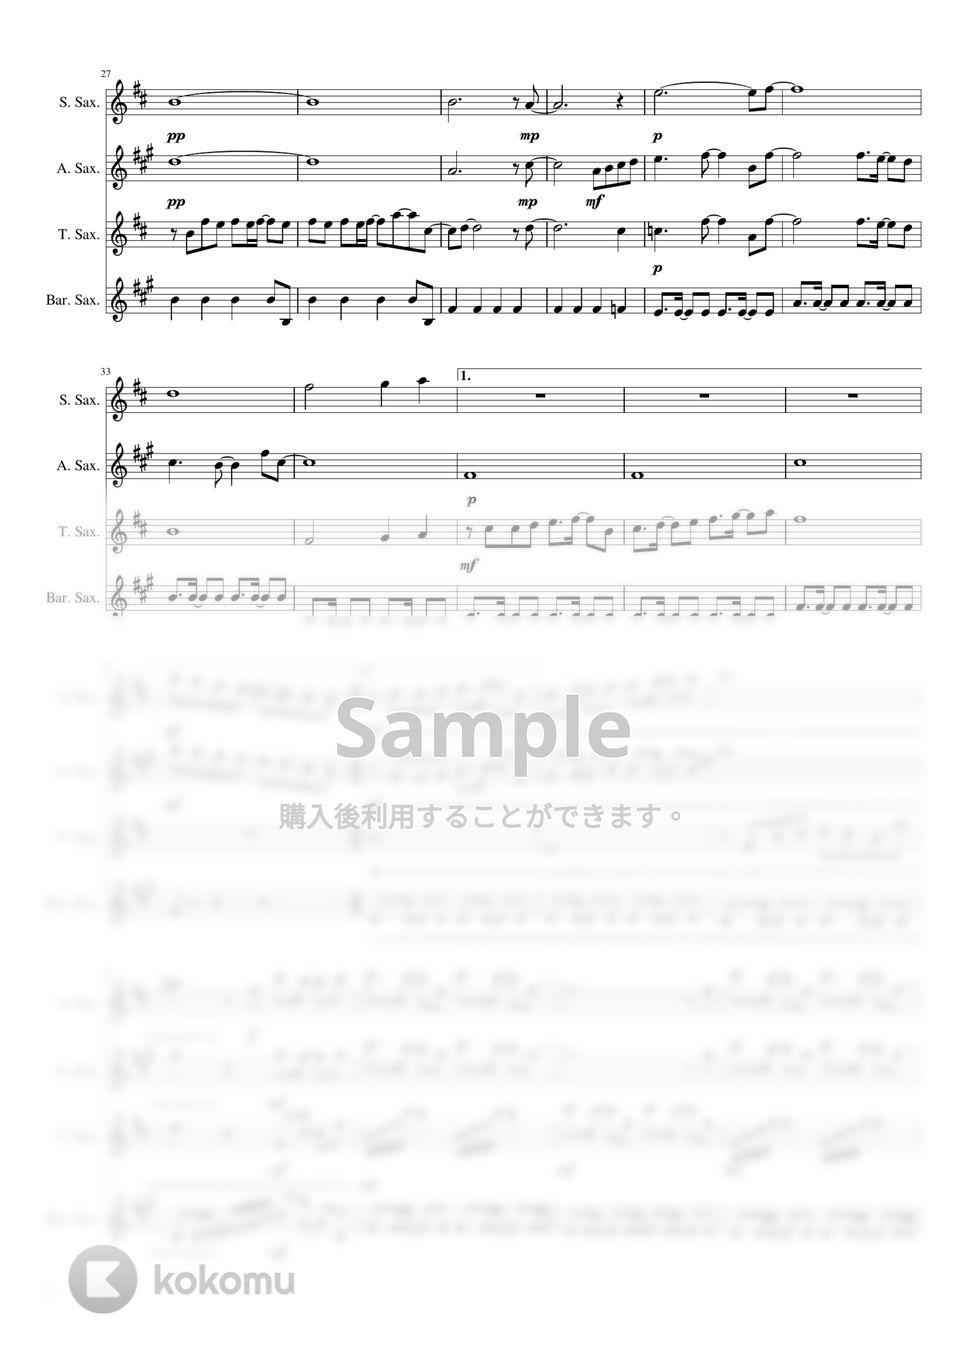 高橋洋子 - 魂のルフラン (サックス四重奏/中級) by ぶんぶんスコア